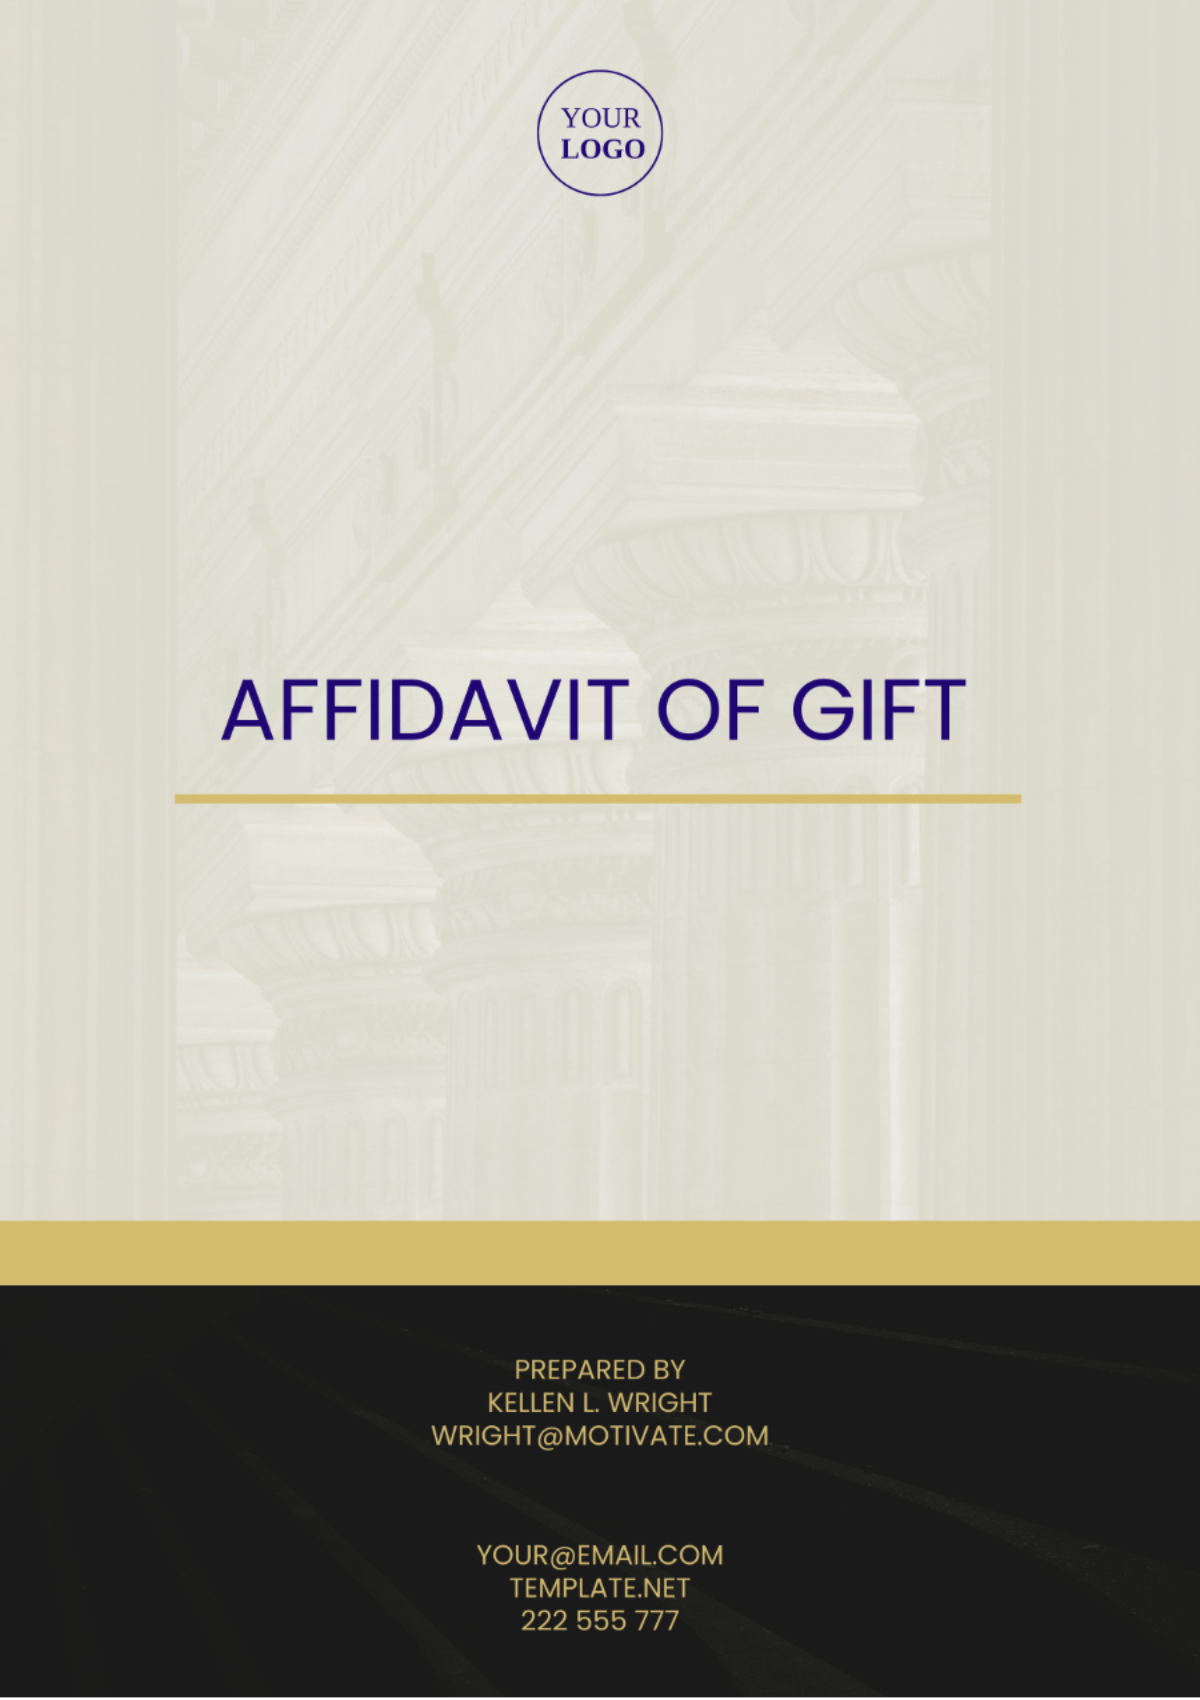 Kentucky Affidavit of Gift Template